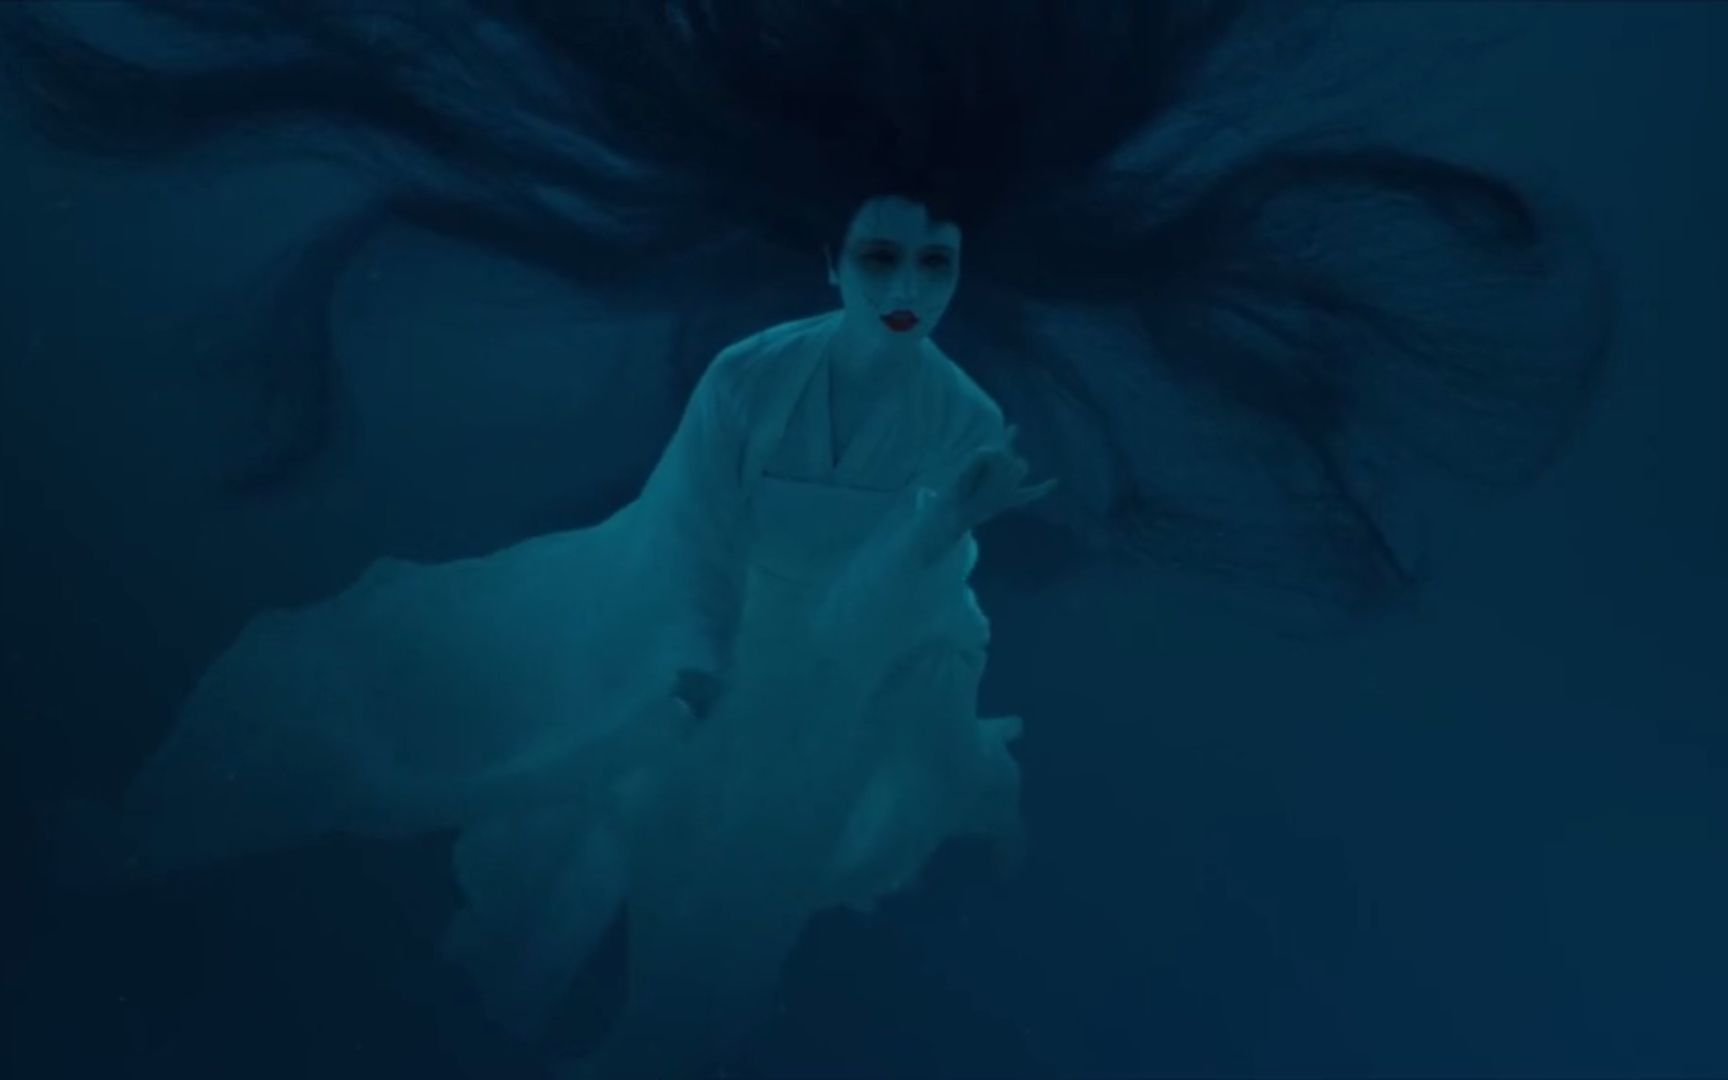 盗墓笔记:吴邪在海底遭遇白衣女鬼,她披头撒发,瞪着血色的双眼